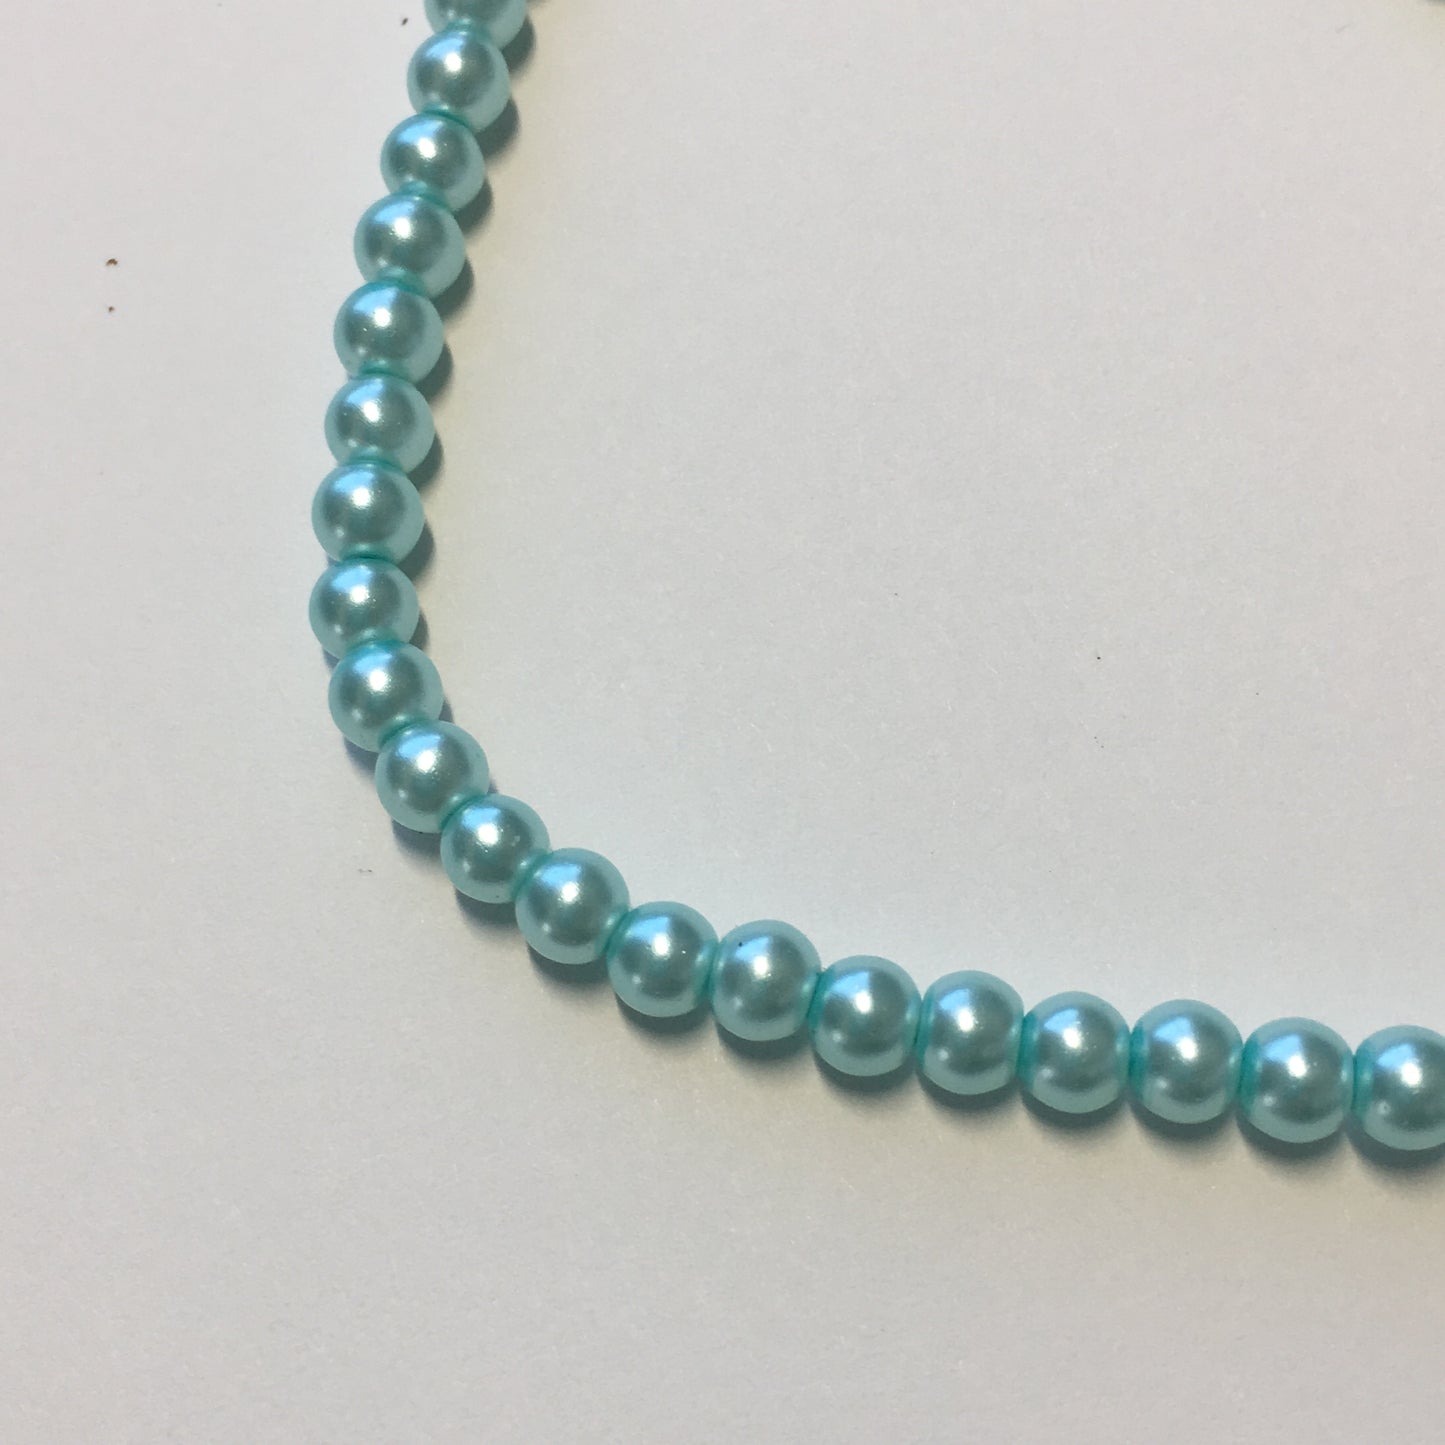 Darice Aqua Strung Round Glass Pearls, 4 mm / 12" Strand - 81 Beads